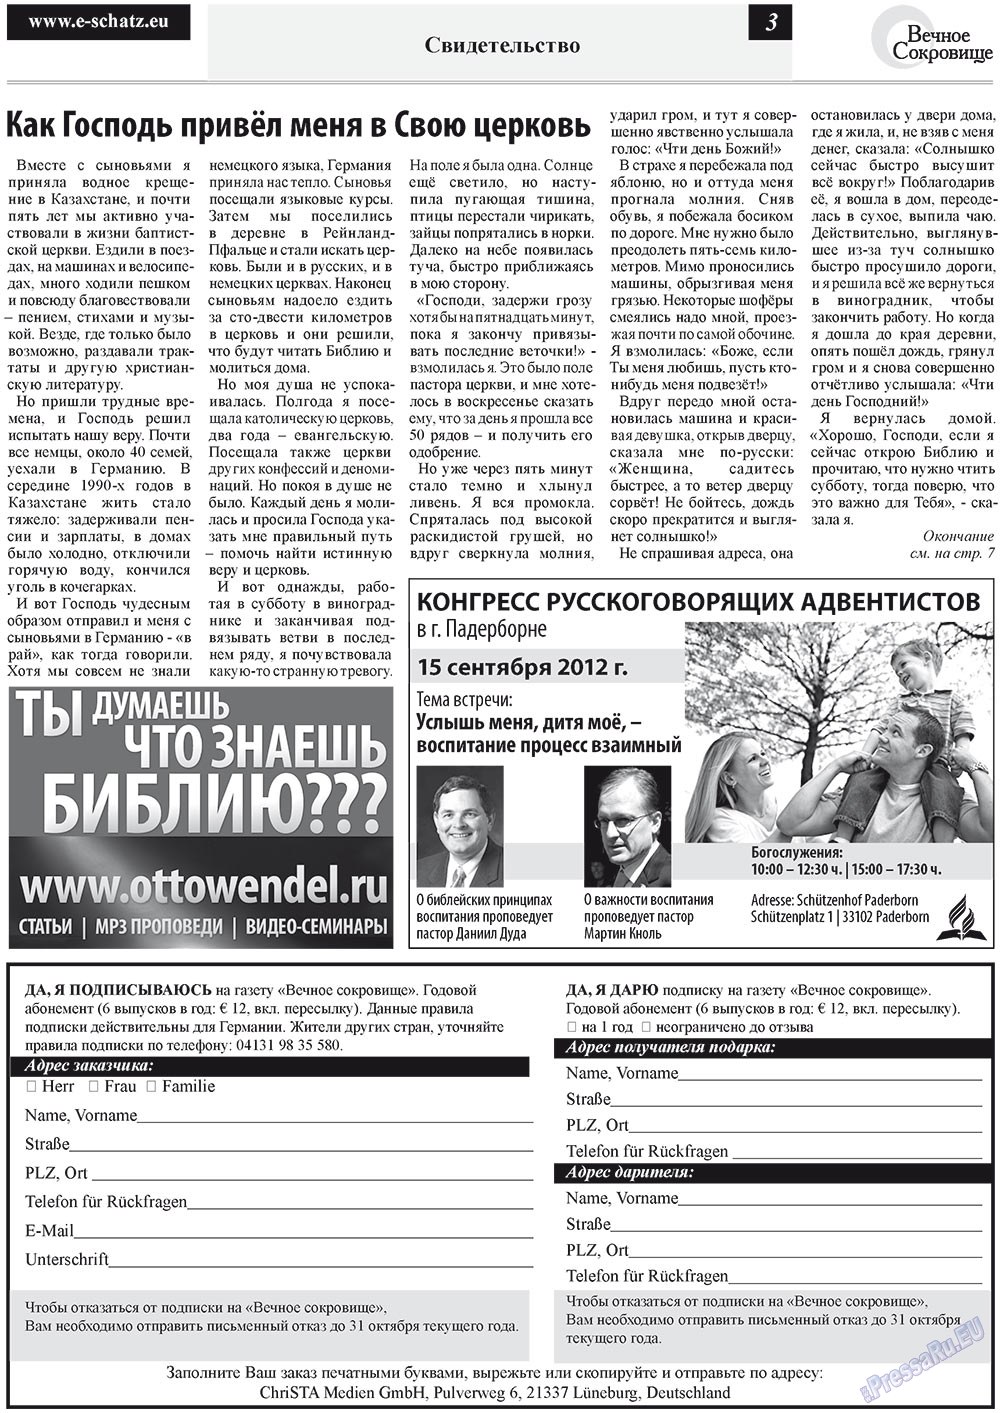 Вечное сокровище (газета). 2012 год, номер 4, стр. 3